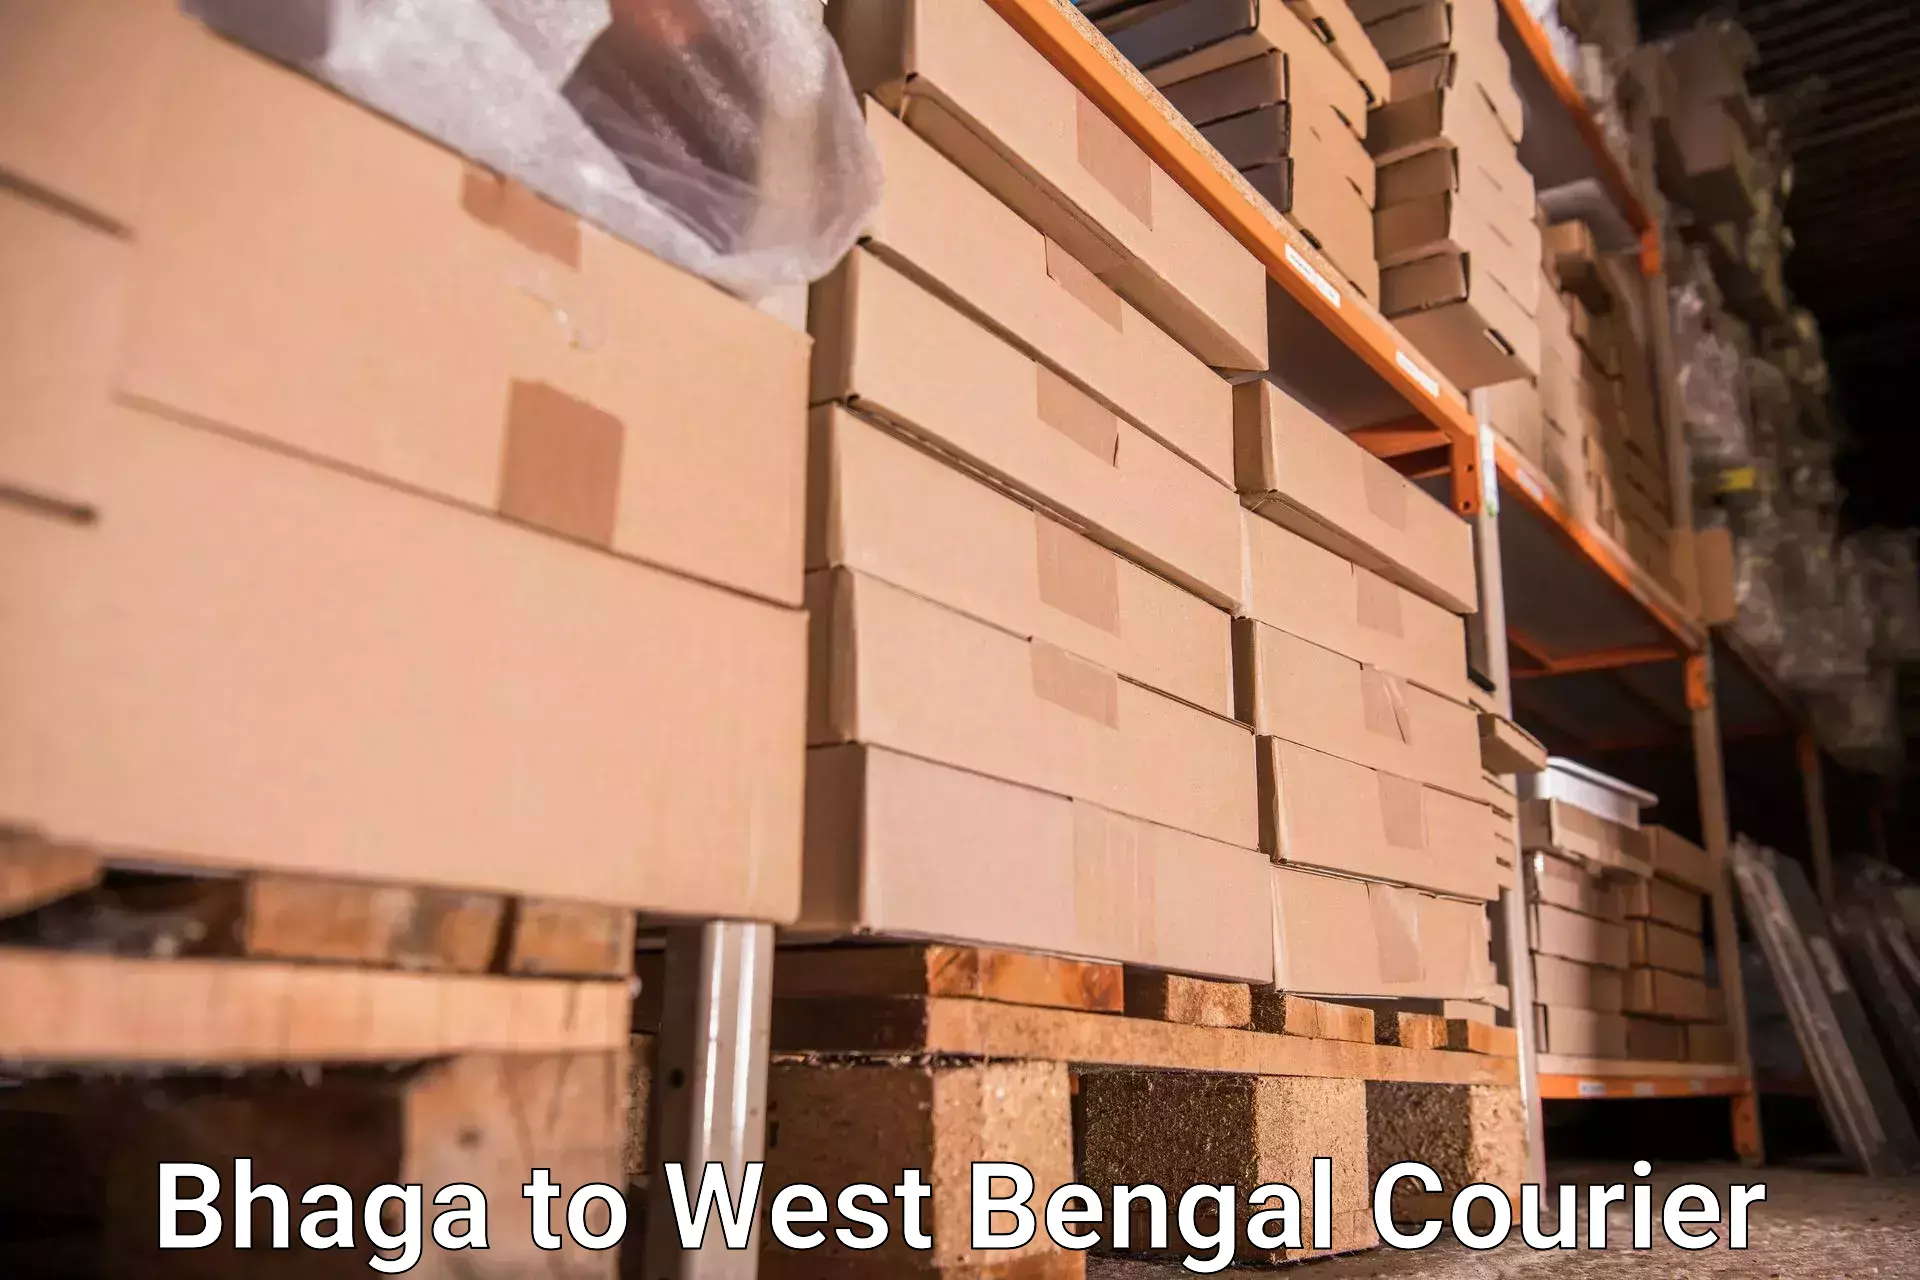 Baggage transport services Bhaga to Manglamaro